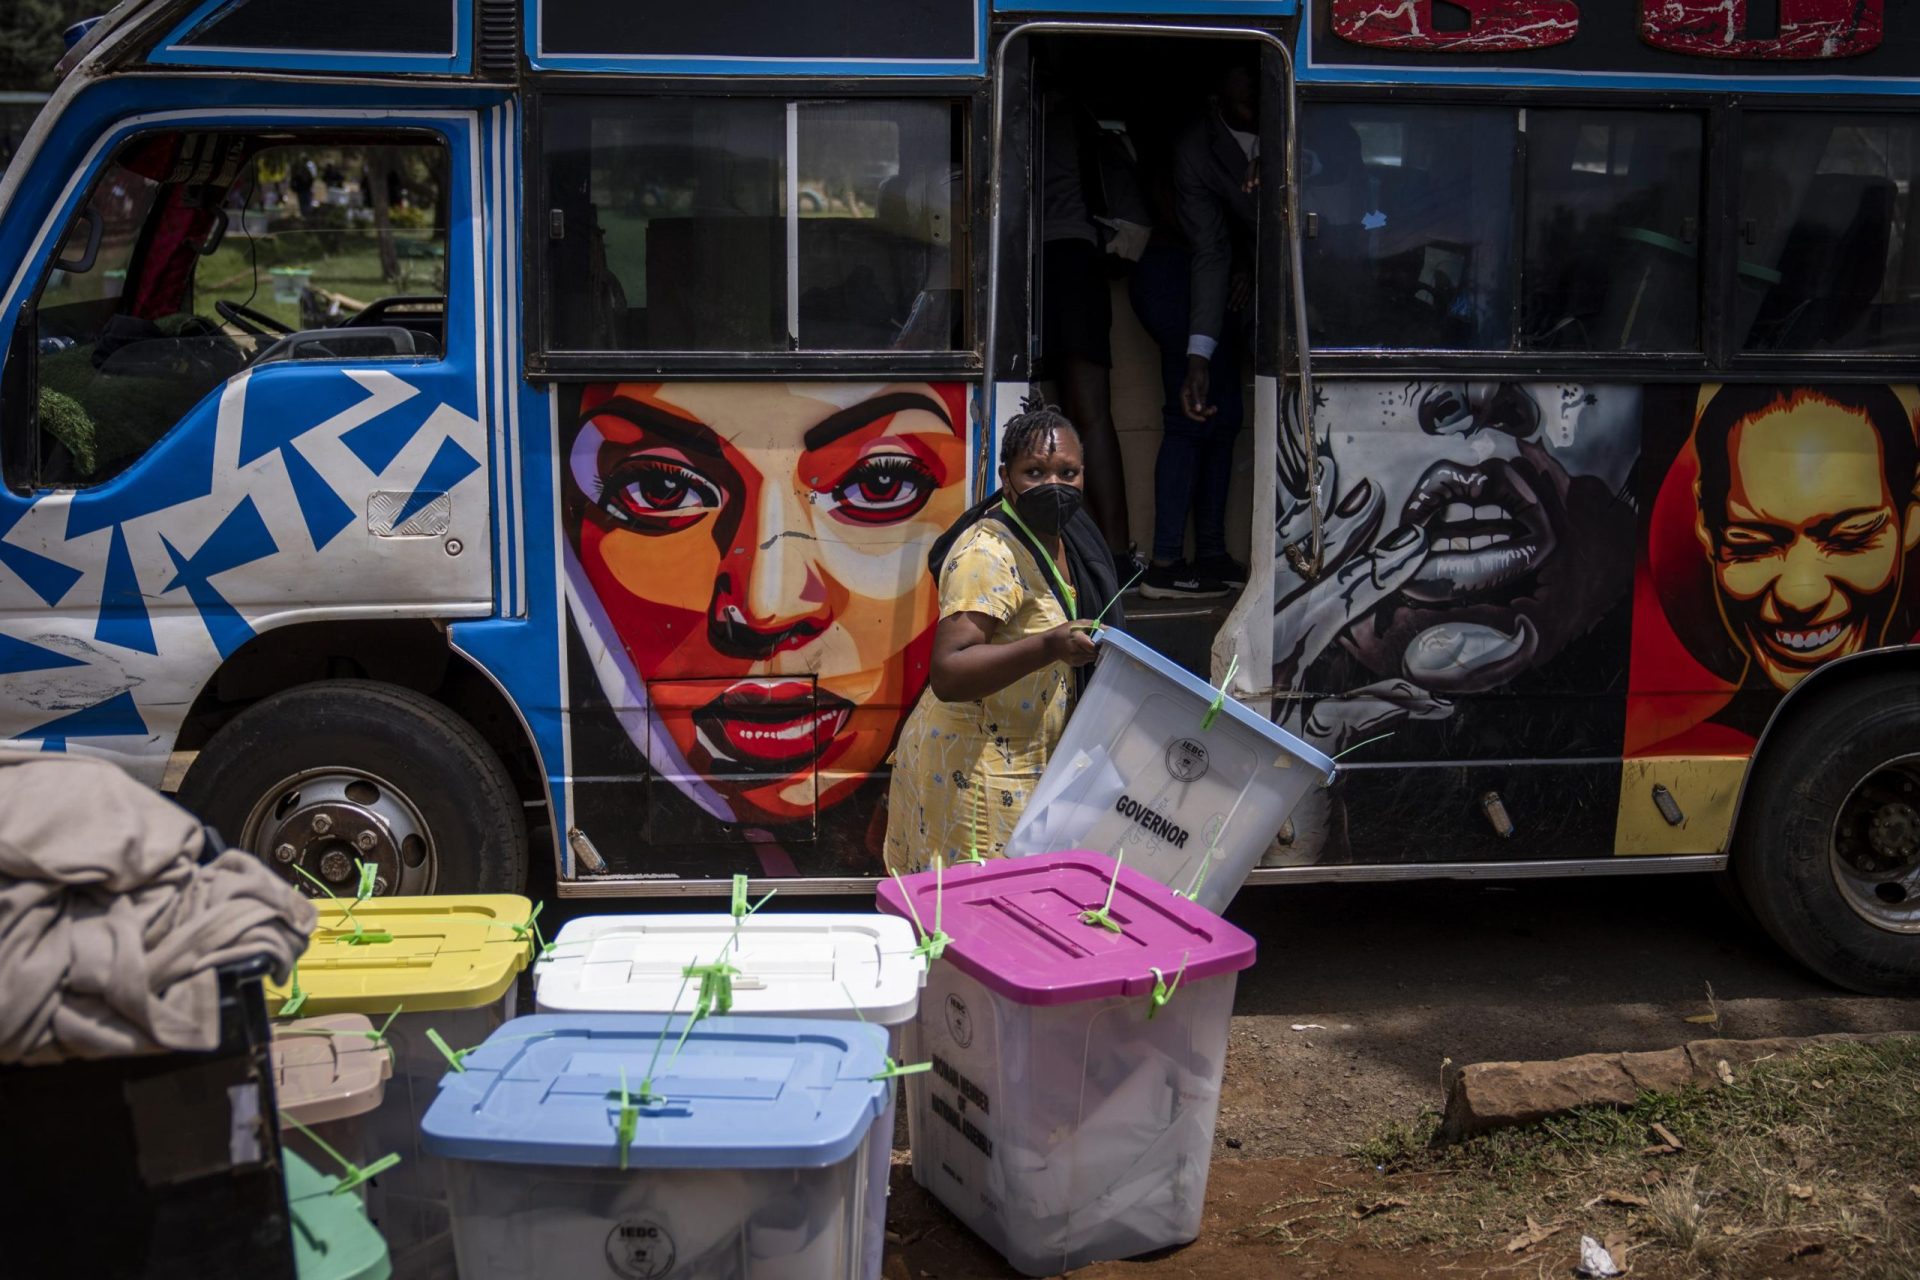 Crece la ansiedad por las afirmaciones en la reñida elección presidencial de Kenia